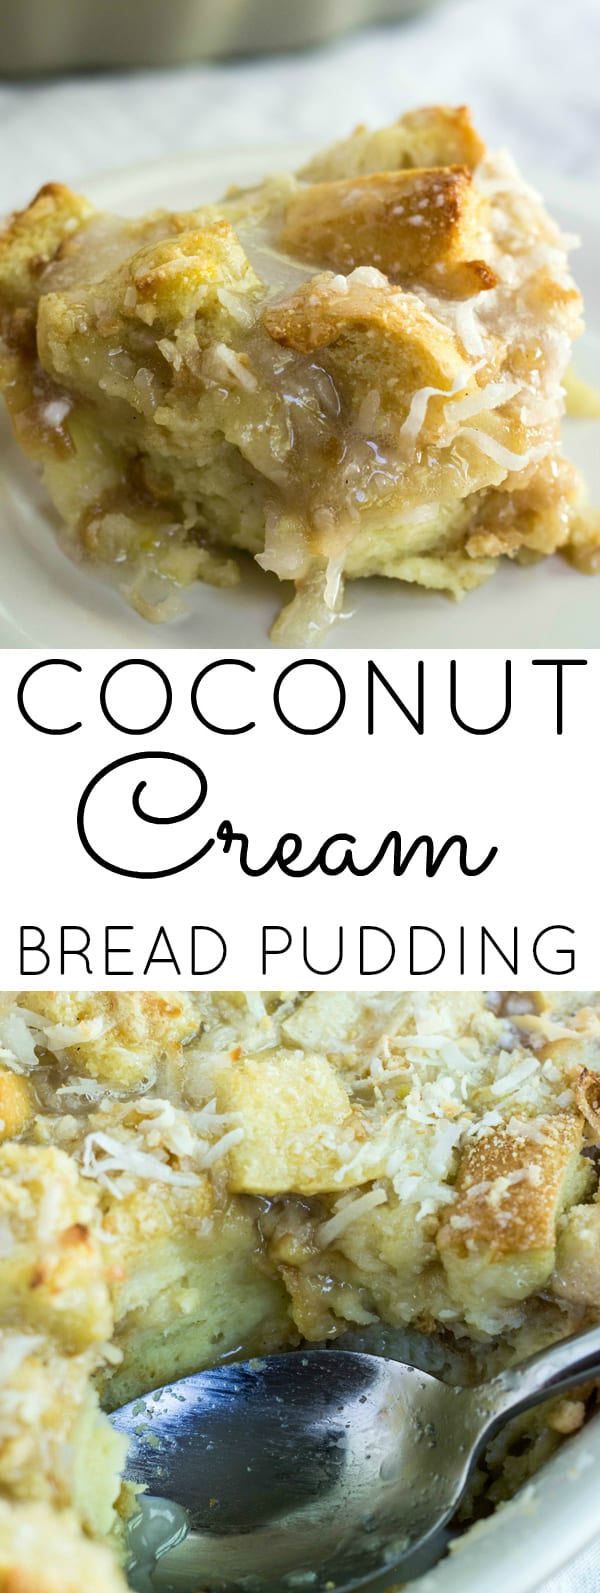 Coconut Cream Bread Pudding Collage